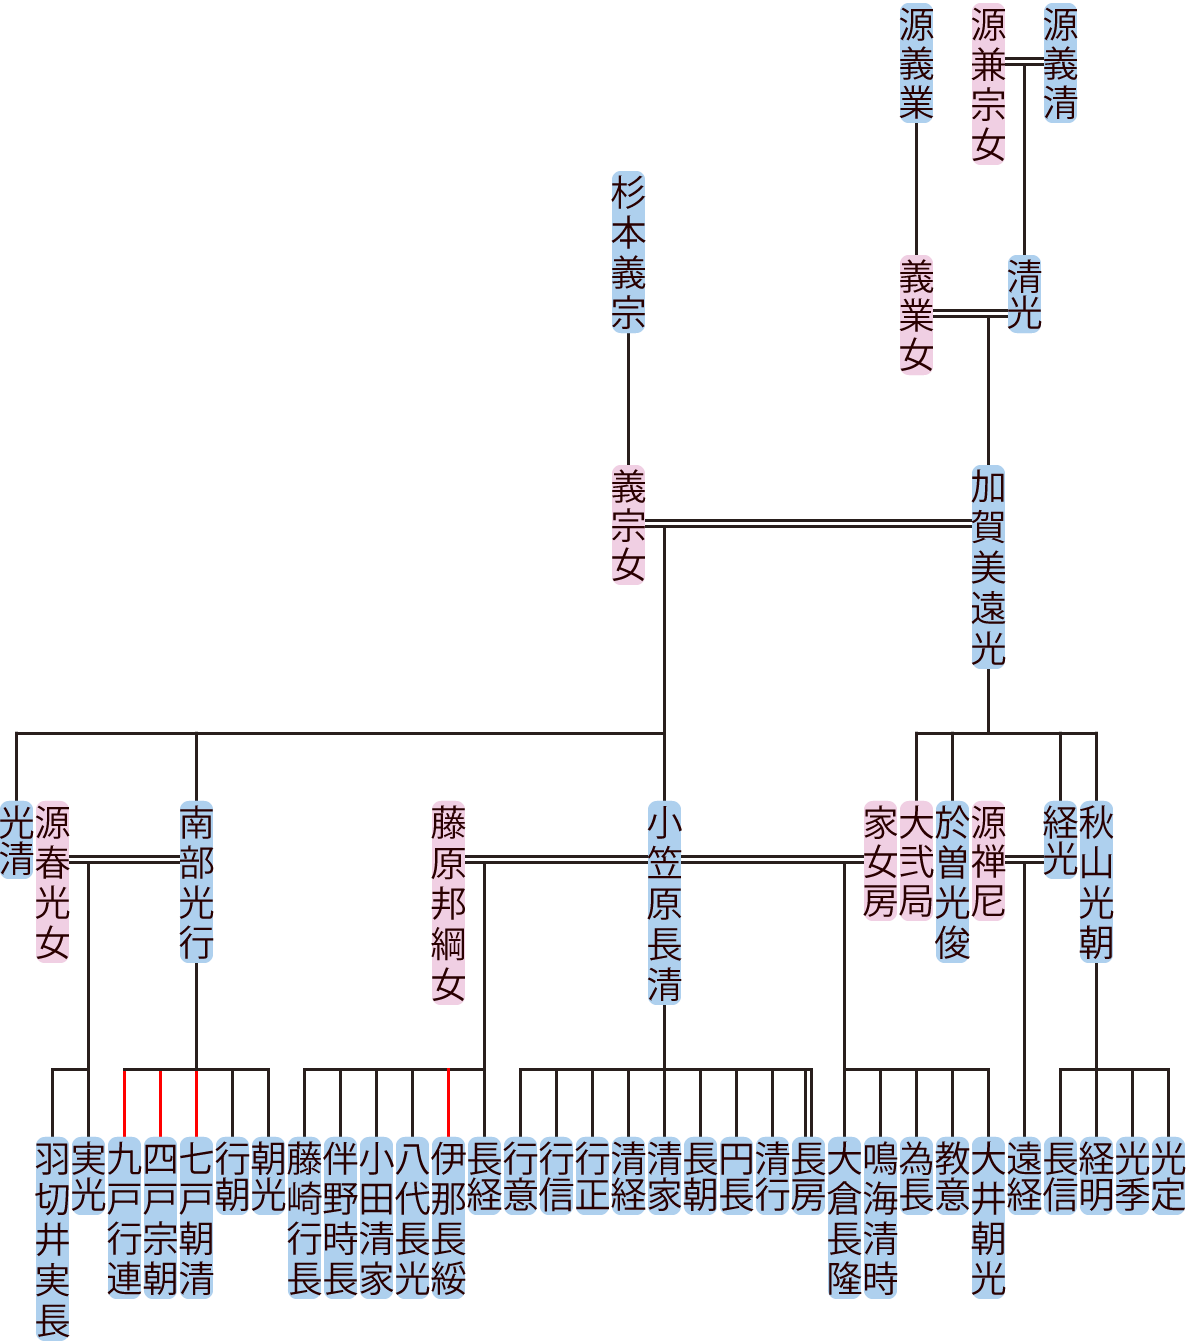 加賀美遠光の系図